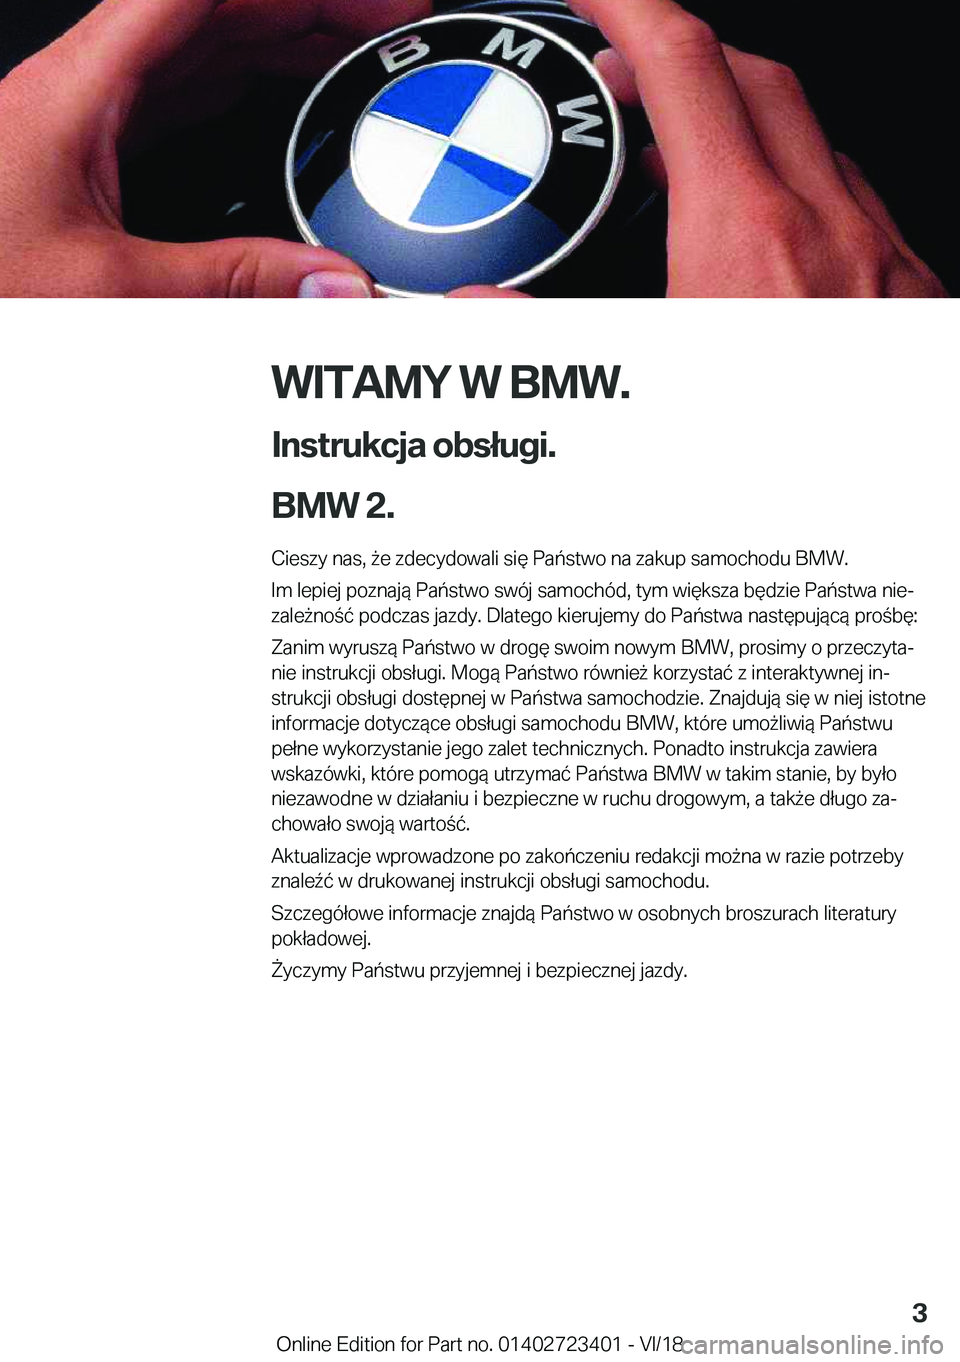 BMW 2 SERIES COUPE 2019  Instrukcja obsługi (in Polish) �W�I�T�A�M�Y��W��B�M�W�.
�I�n�s�t�r�u�k�c�j�a��o�b�s�ł�u�g�i�.
�B�M�W��2�.� �C�i�e�s�z�y��n�a�s�,�9�e��z�d�e�c�y�d�o�w�a�l�i��s�i�